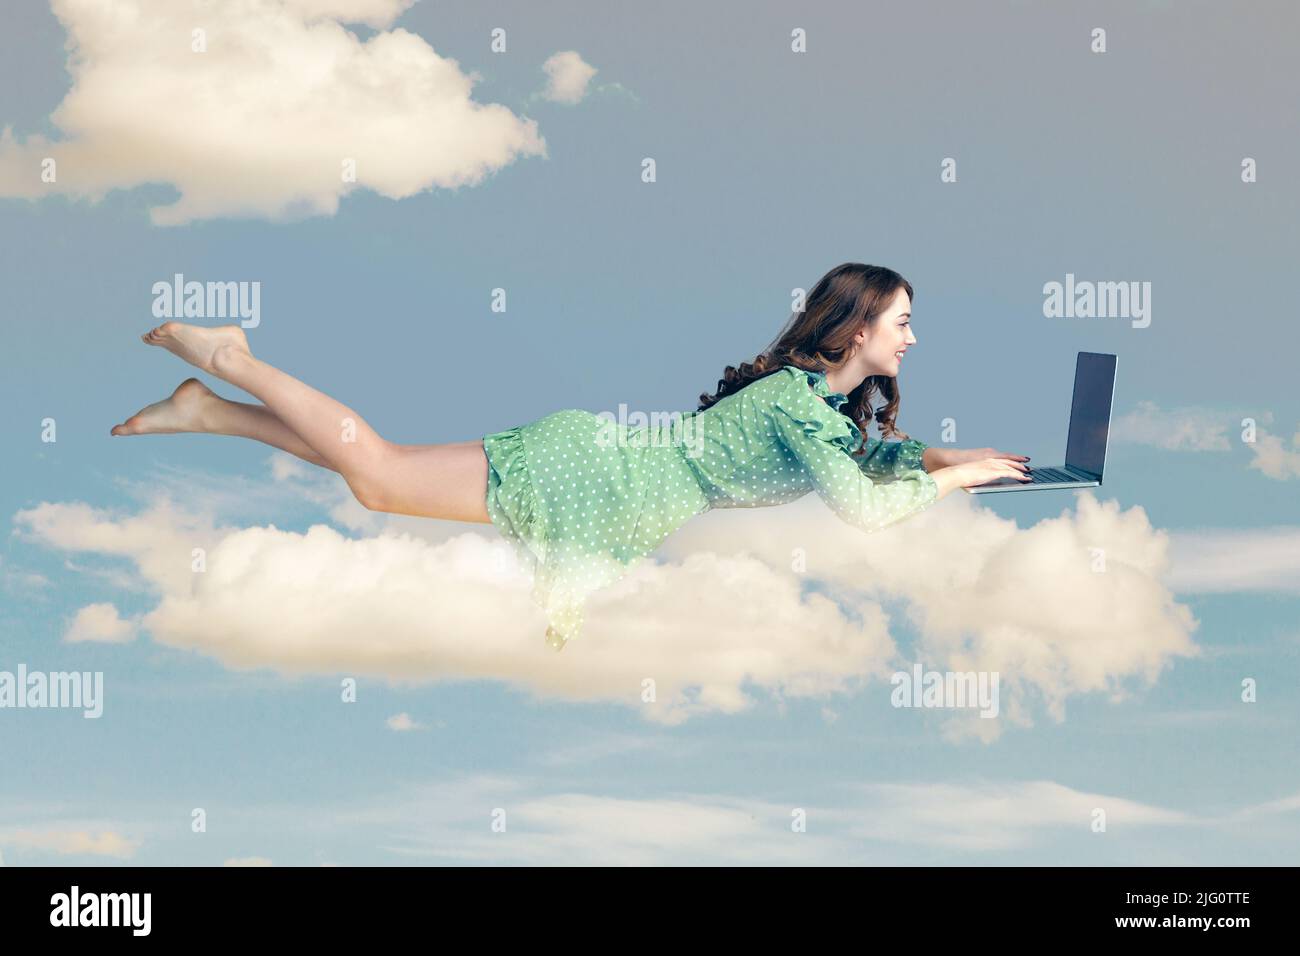 Schwebt in der Luft. Happy fröhlich Mädchen Rüschen Kleid schweben mit Laptop, Tastatur eingeben, lesen gute Nachricht auf dem Computer, während in der Luft fliegen. Collage Komposition am Tag wolkigen blauen Himmel Stockfoto